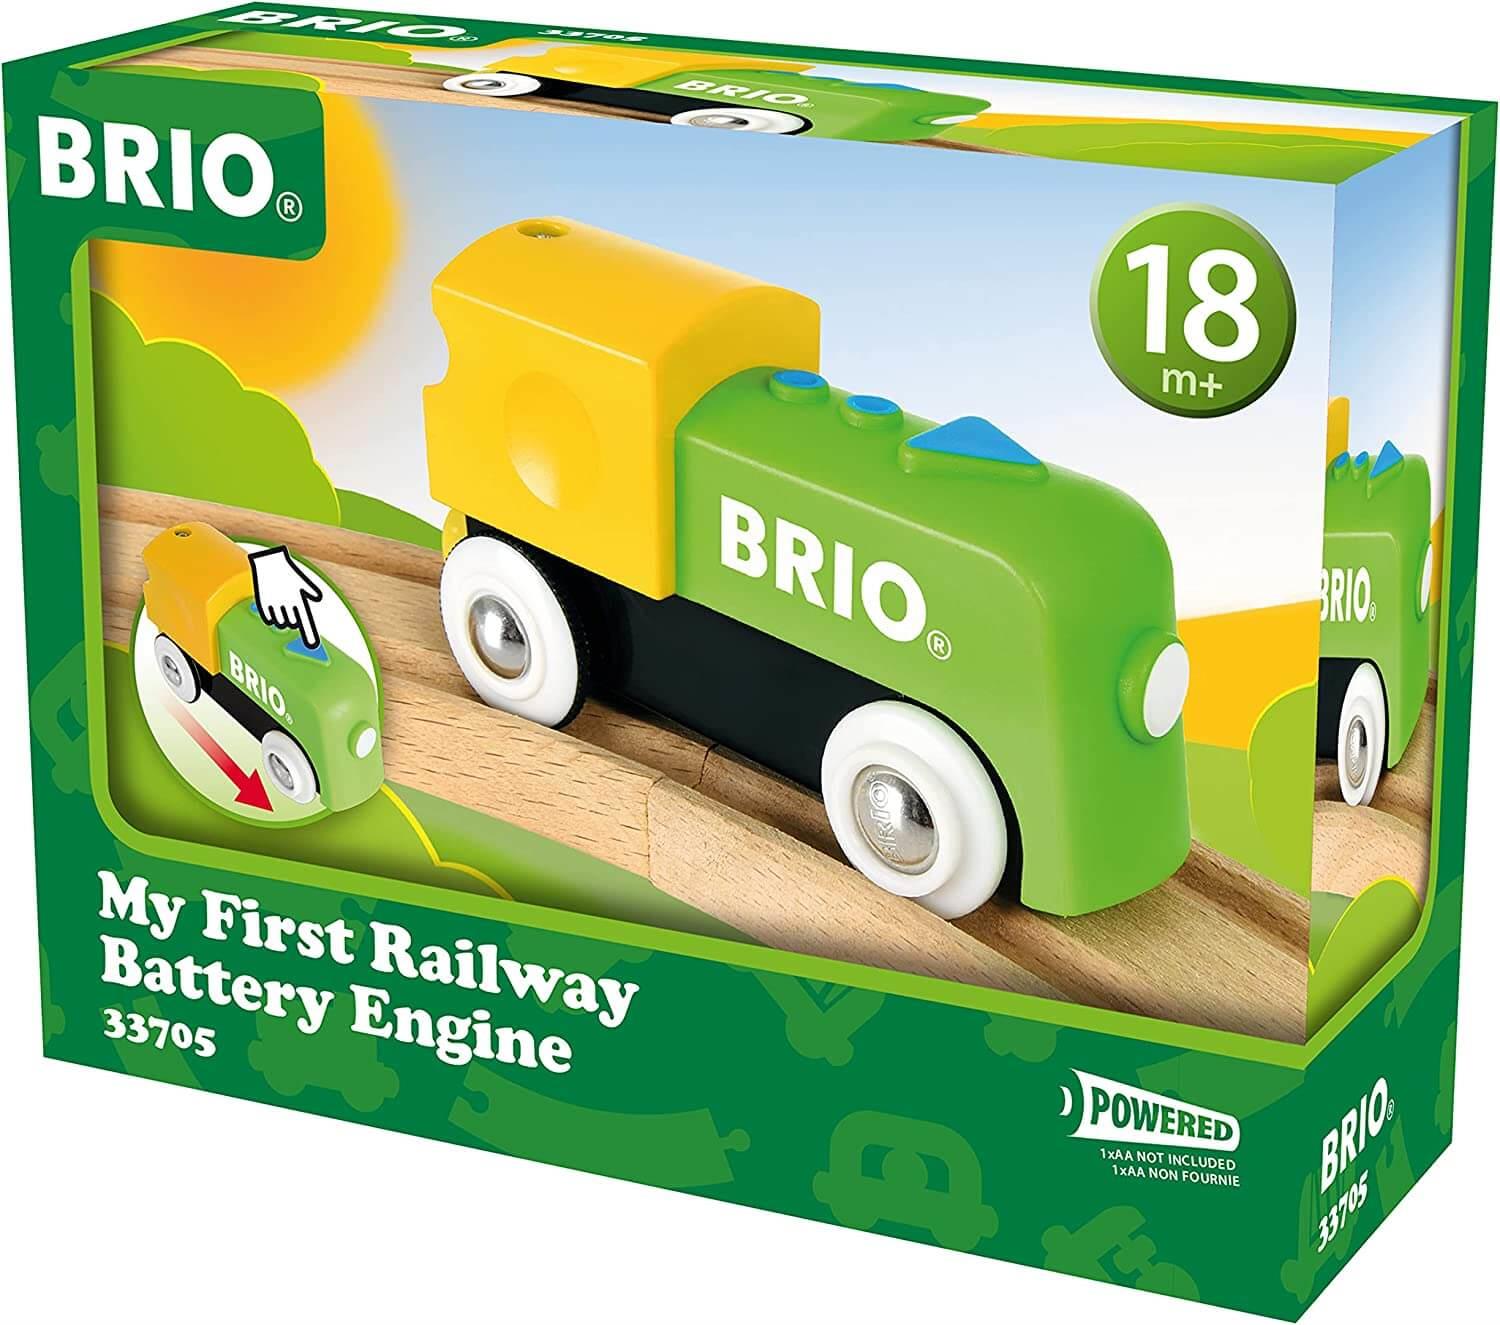 Brio My First Railway 33705 Battery Engine